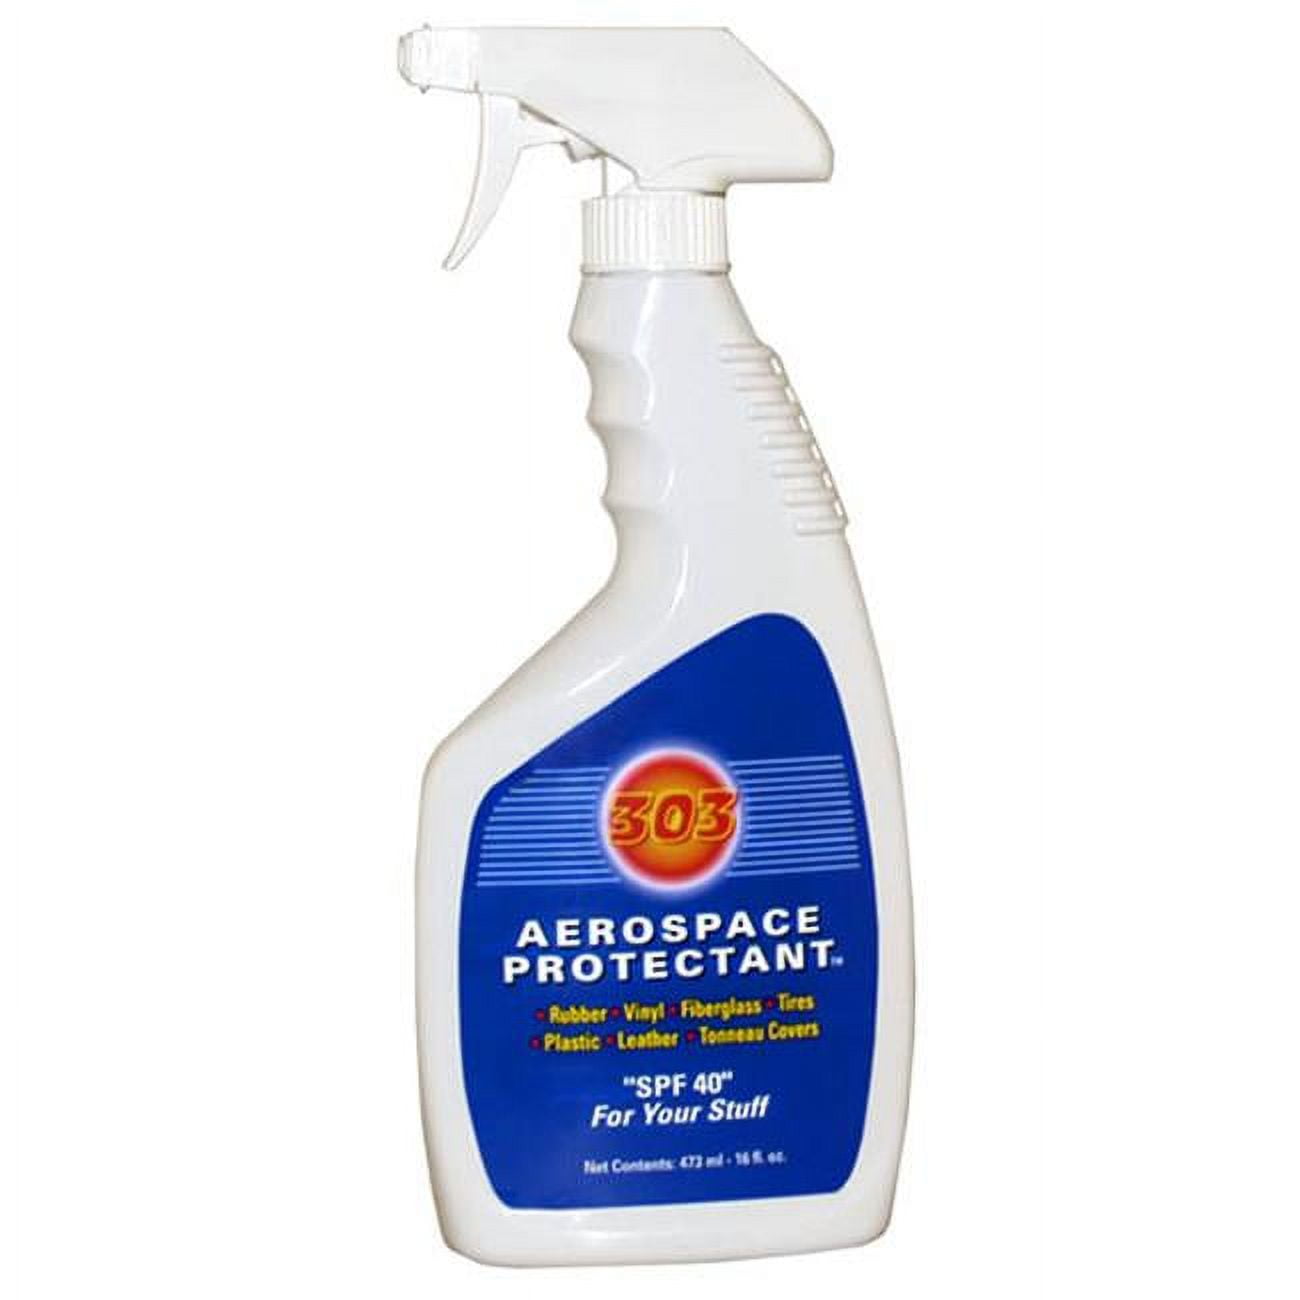 303 Automotive Interior and Exterior Protectant Spray 24oz